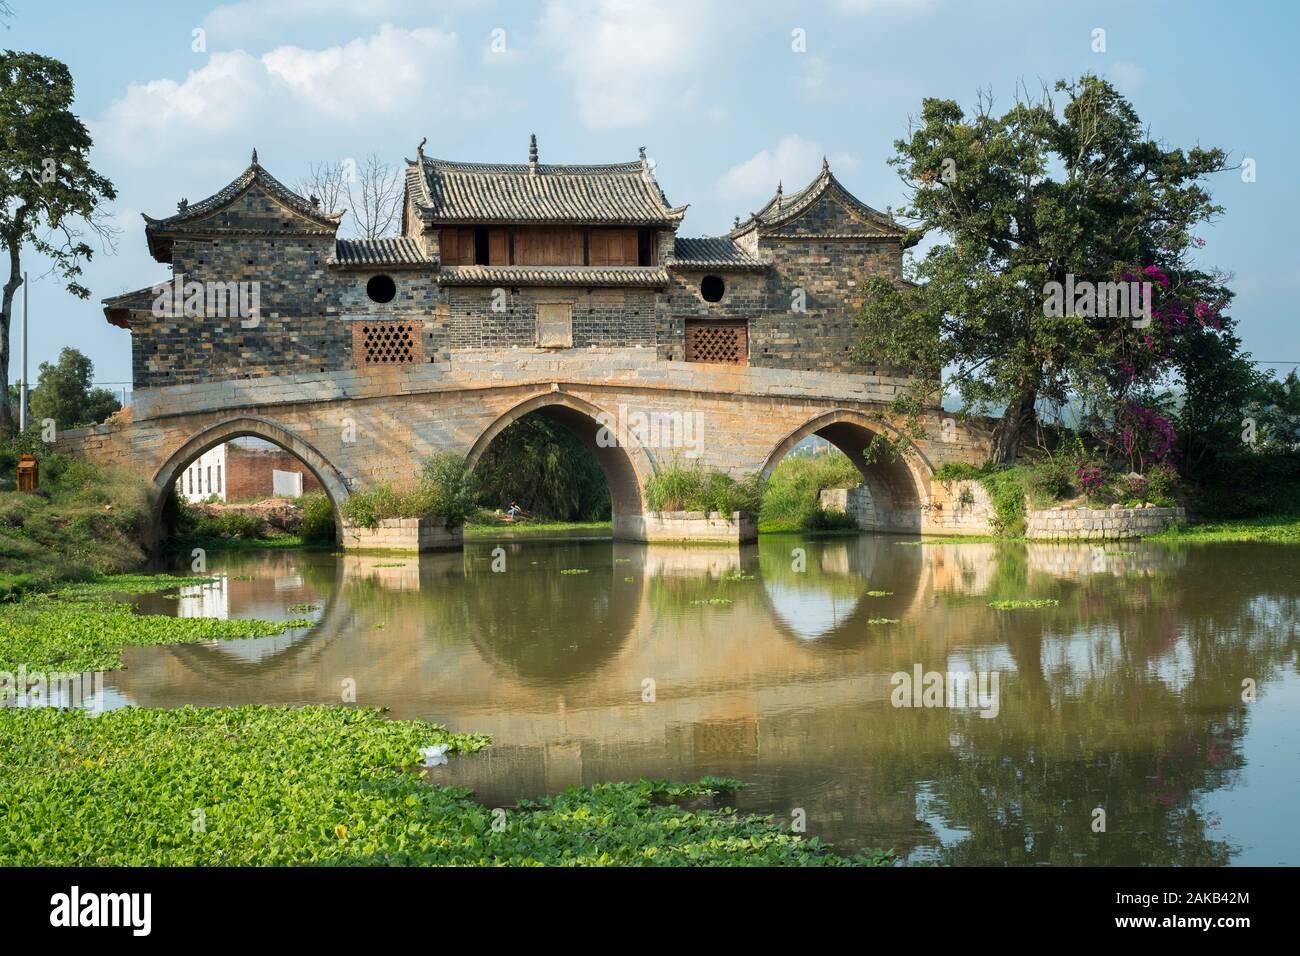 Xianghui Bridge was first built over the Lujiang River in Xinfang Village, Jianshui, Yunnan, China in 1814. Stock Photo